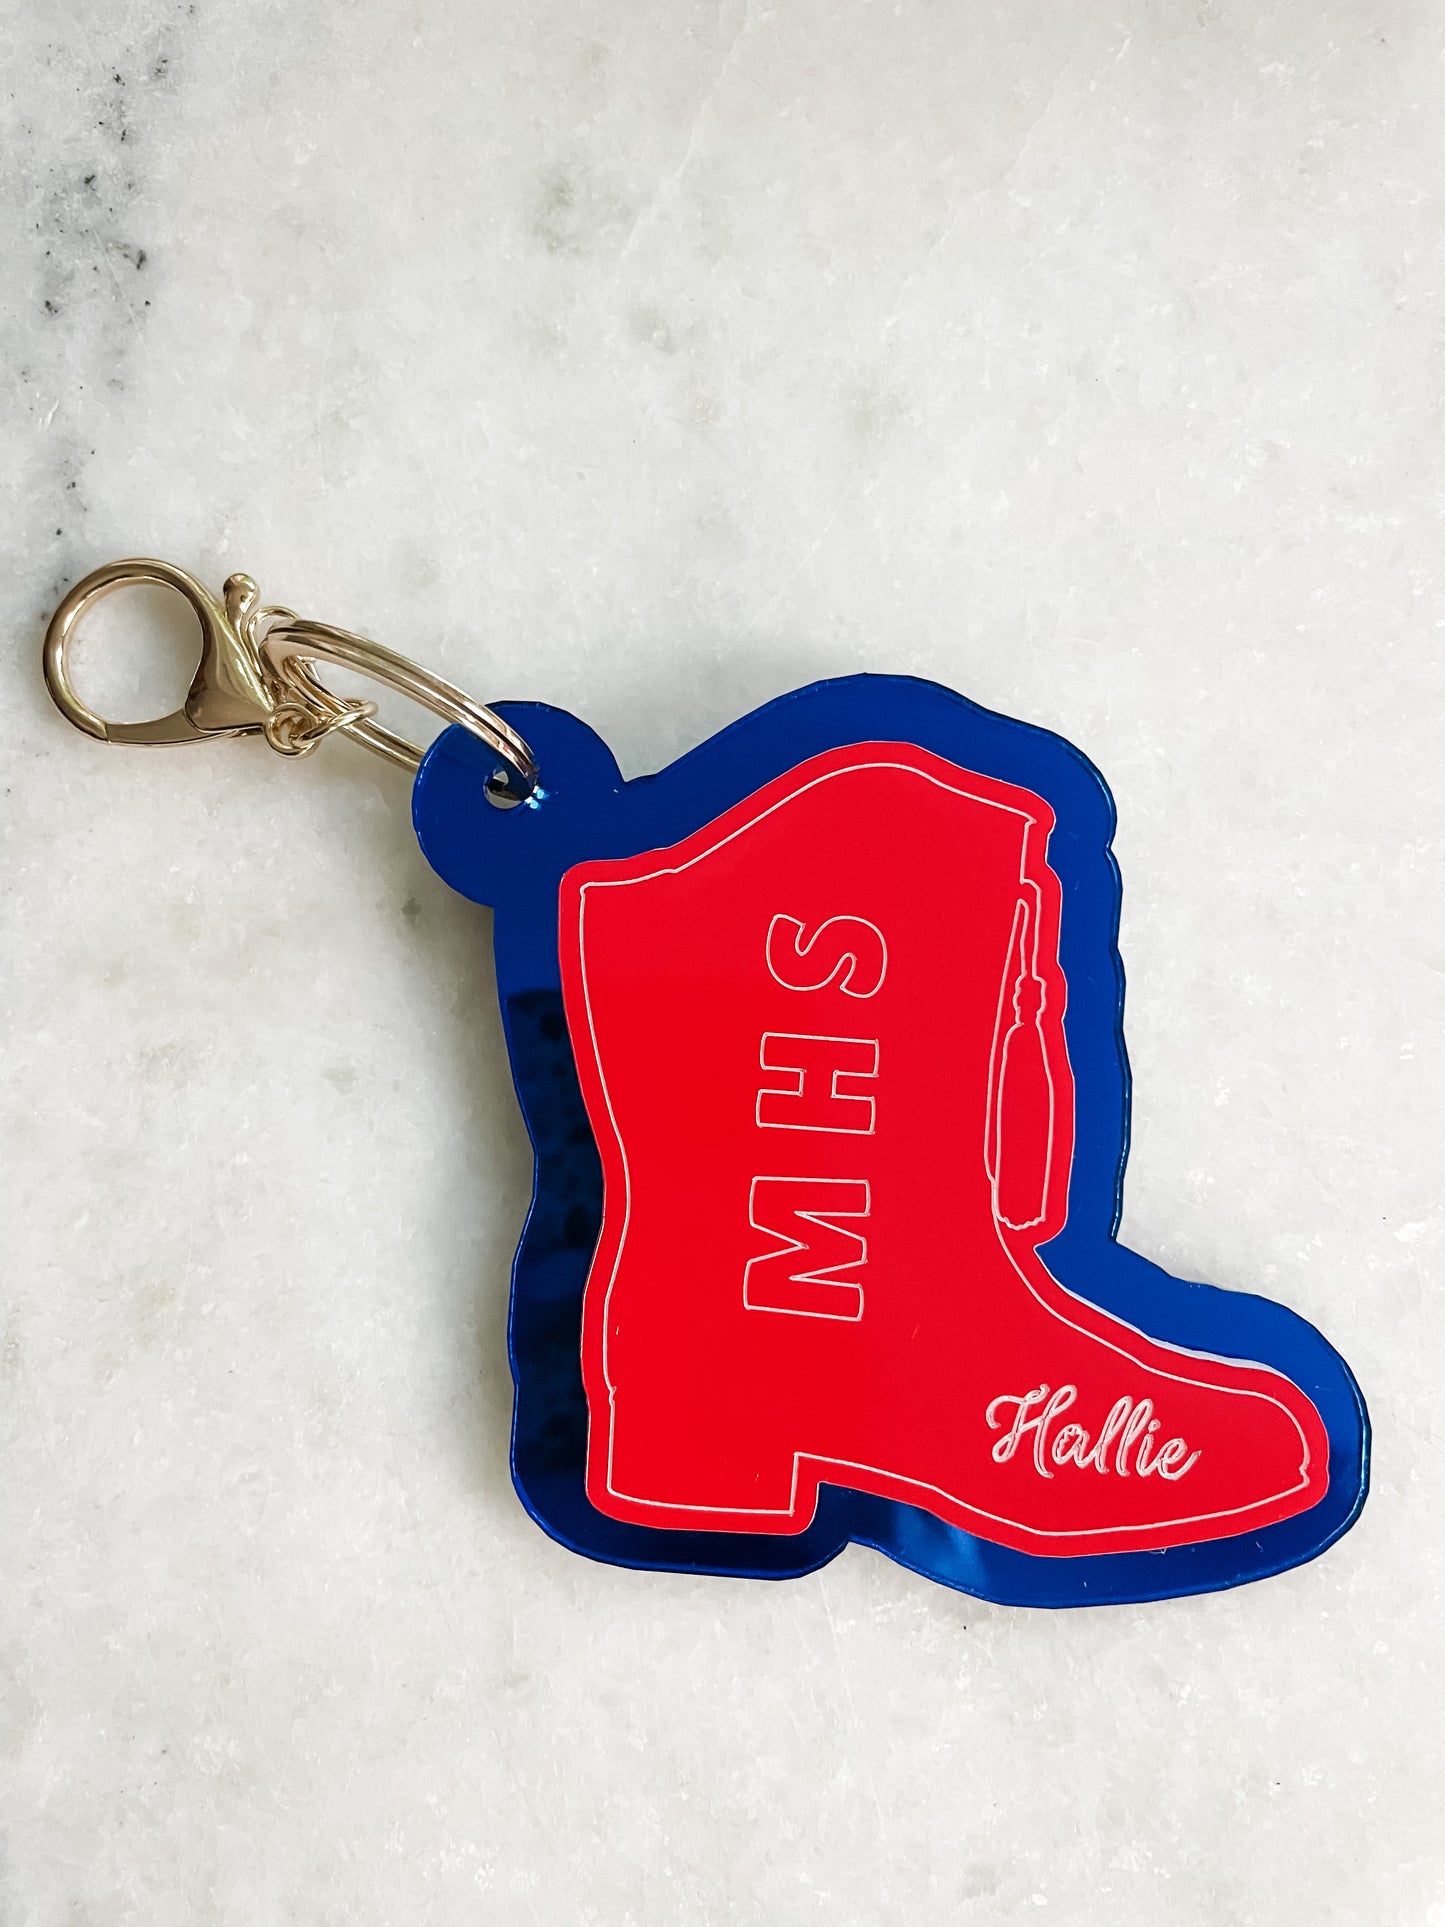 Custom sports bag tag / keychain